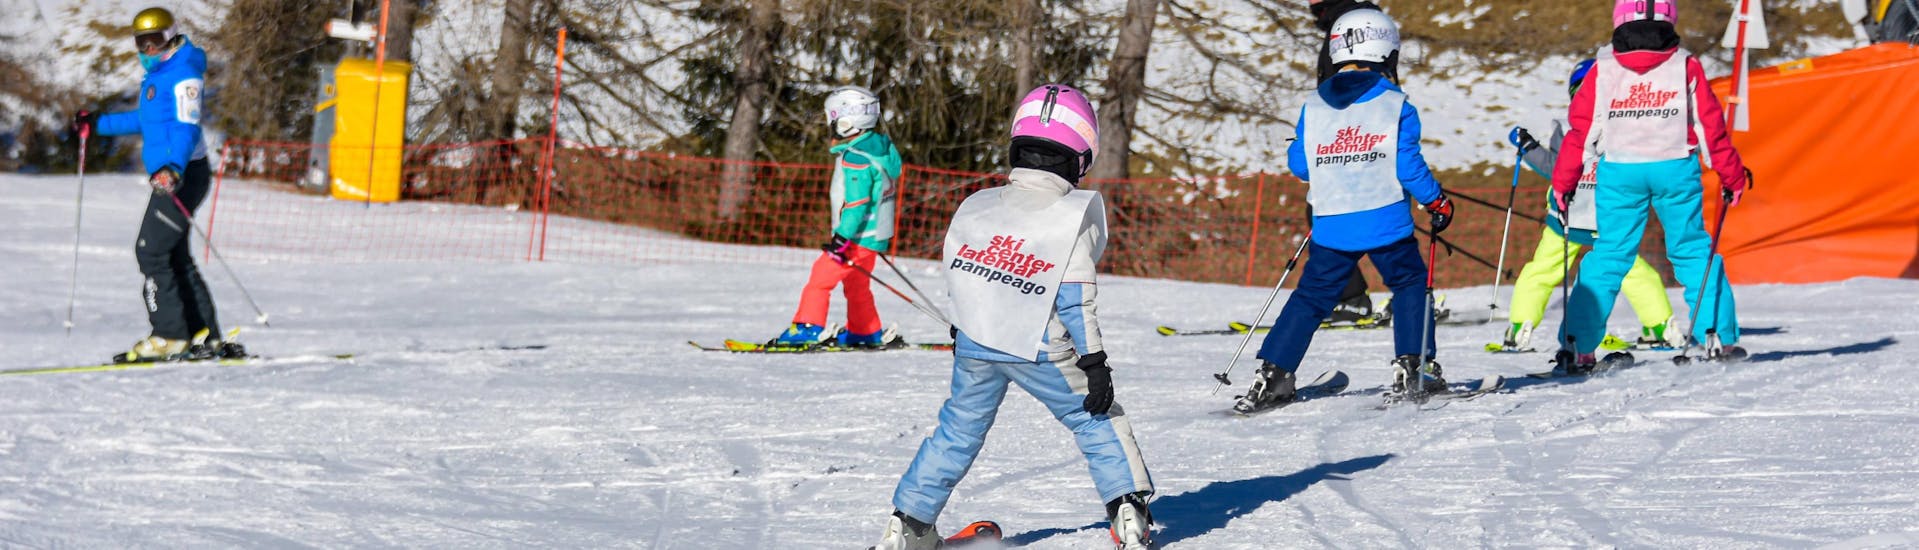 Lezioni di sci per bambini (4-14 anni) - Natale - Con Esp..